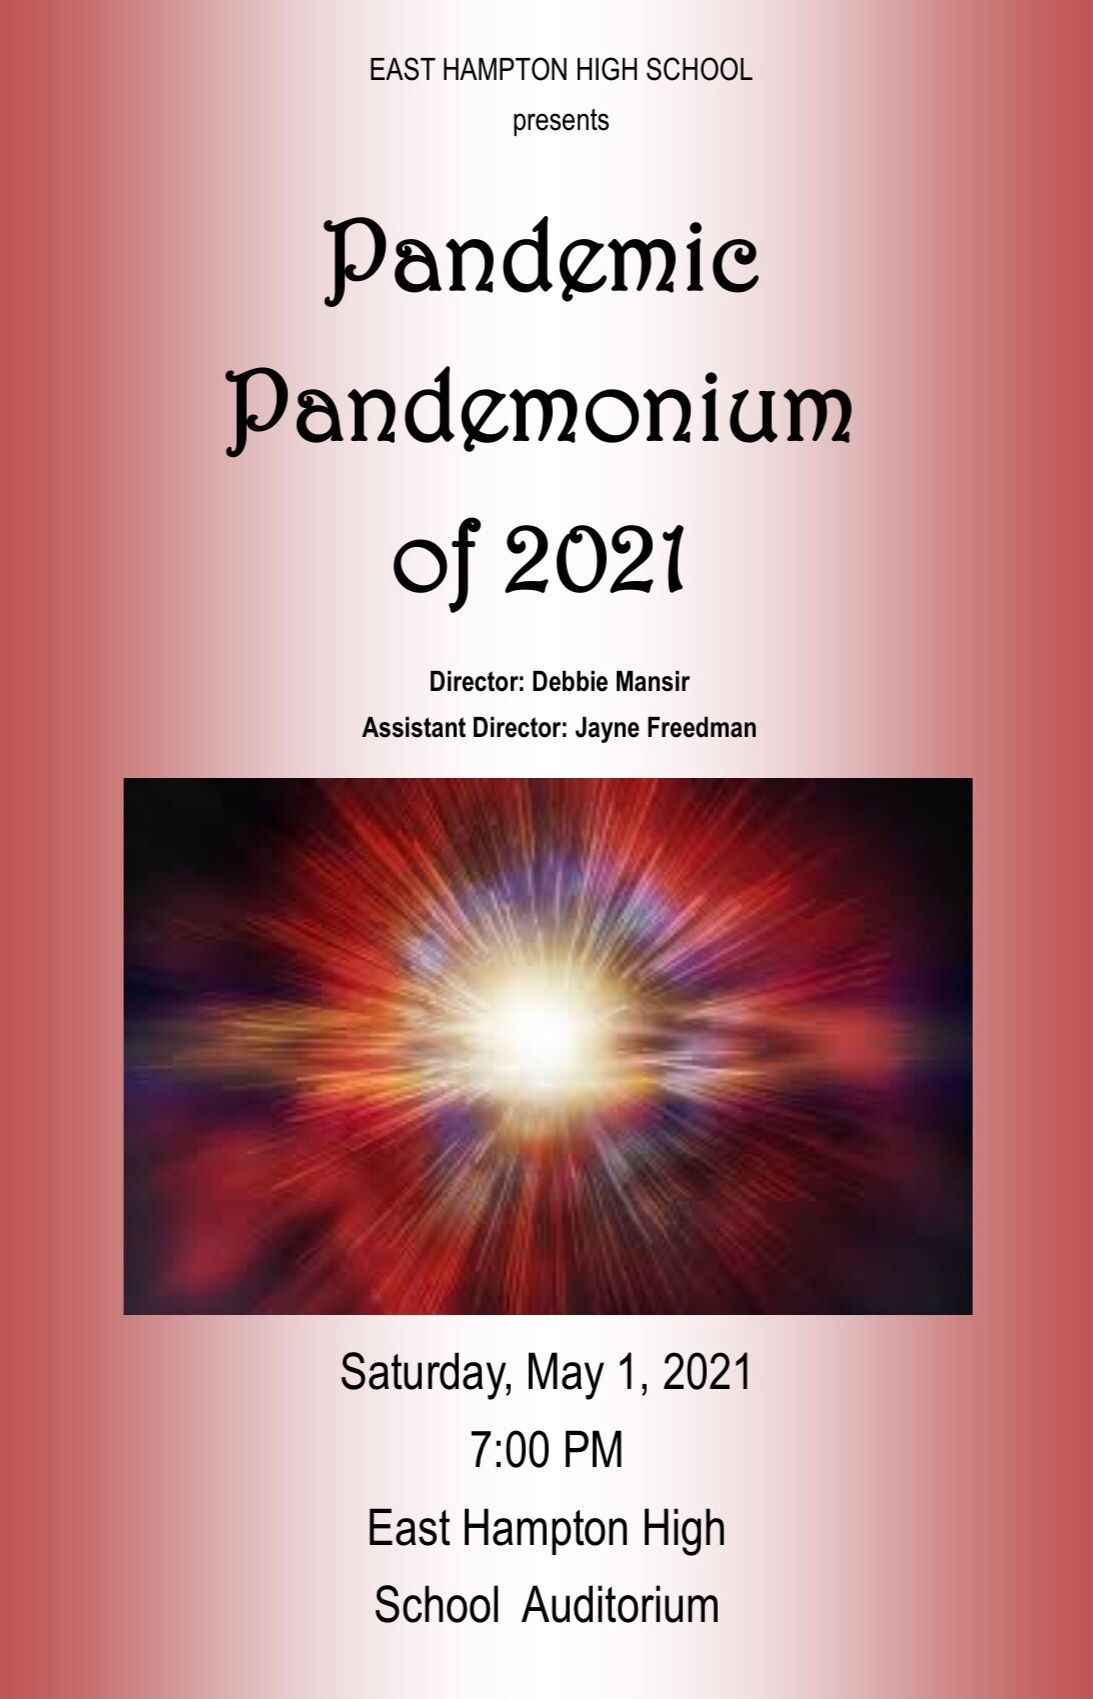 Pandemic Pandemonium of 2021